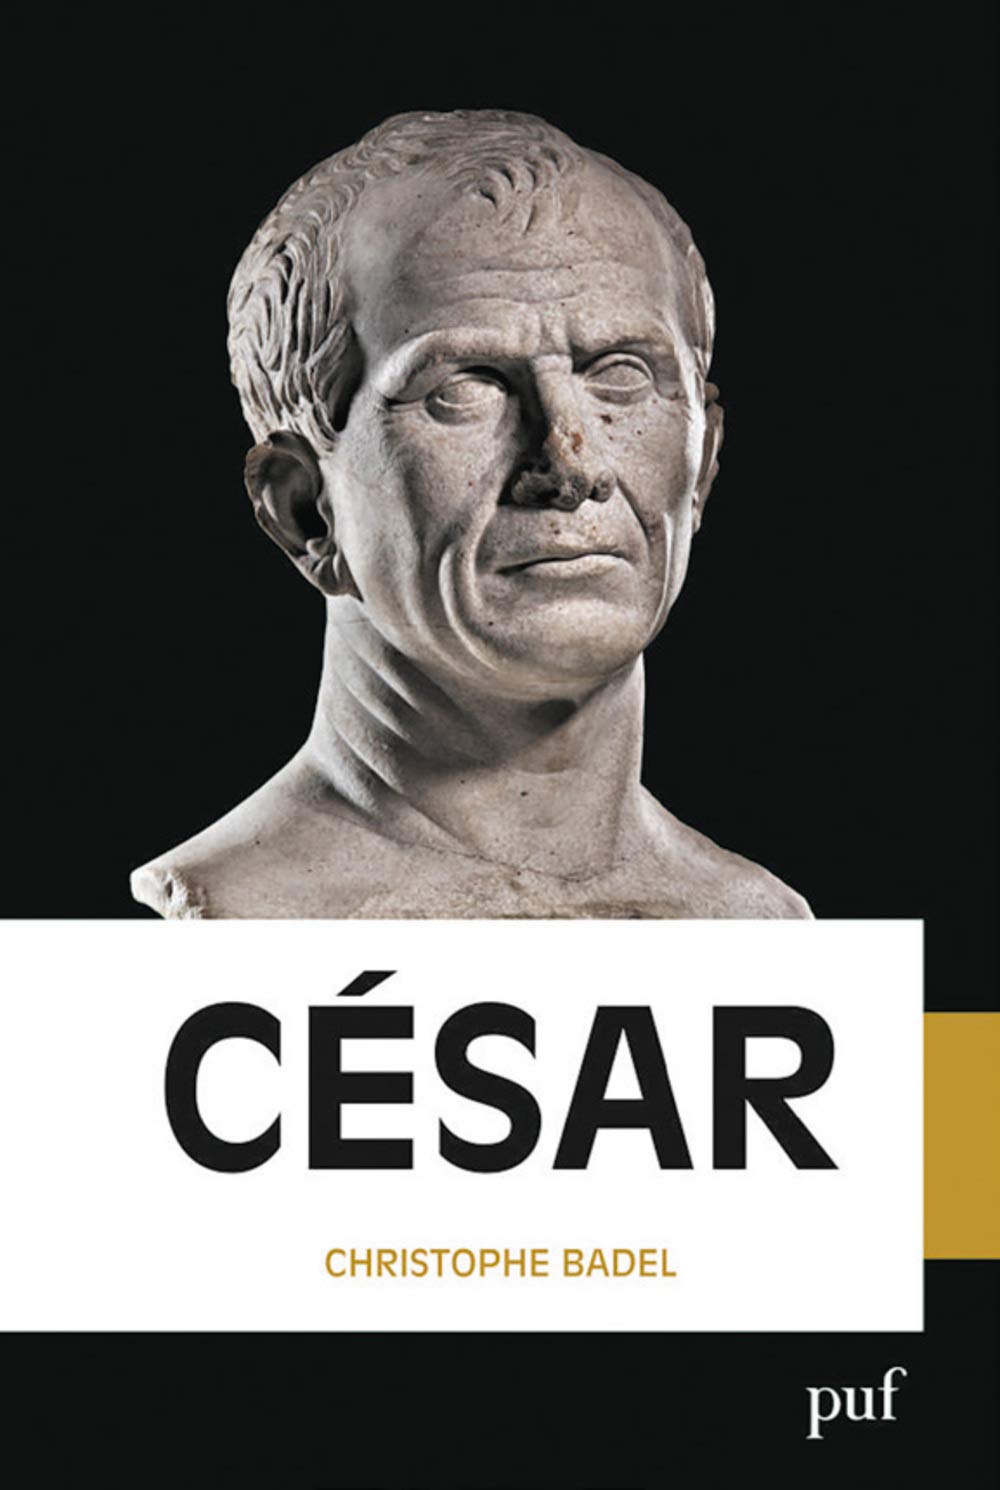 César, 2019, 229 p.